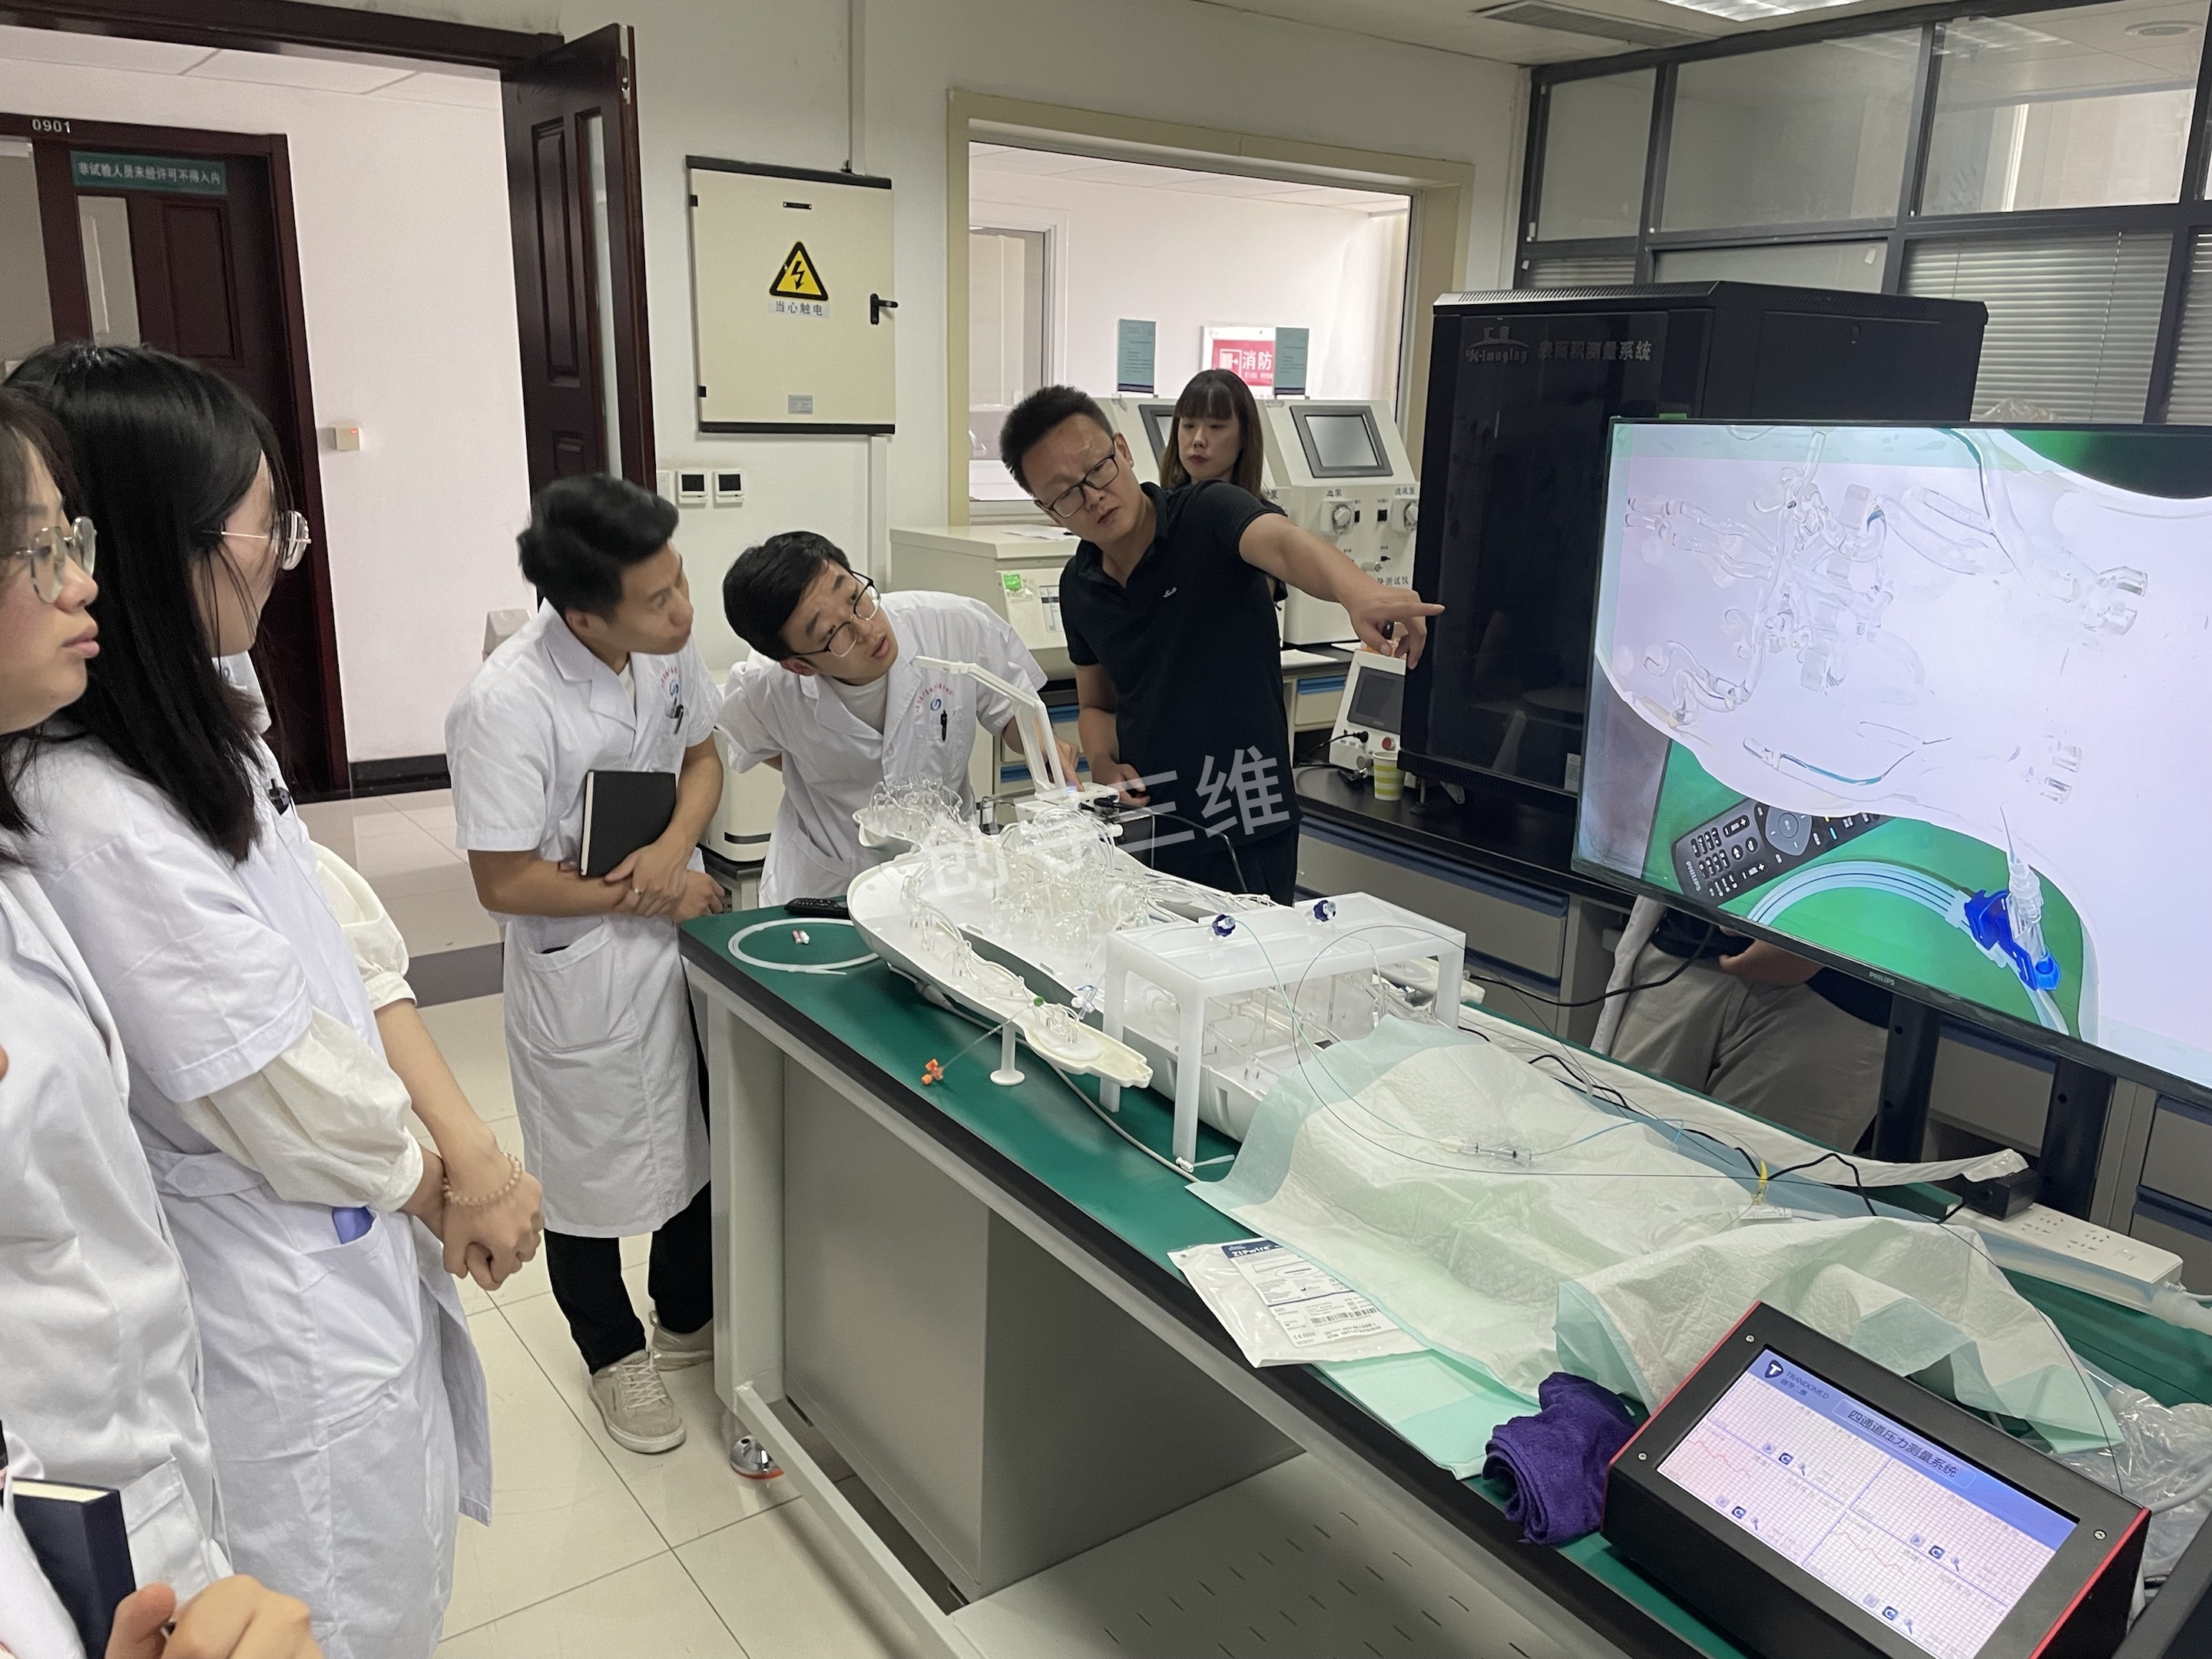 新一代3D打印全身血液循环系统交付山东省医疗器械产品质量检验中心 用于新研发介入器械测试验证